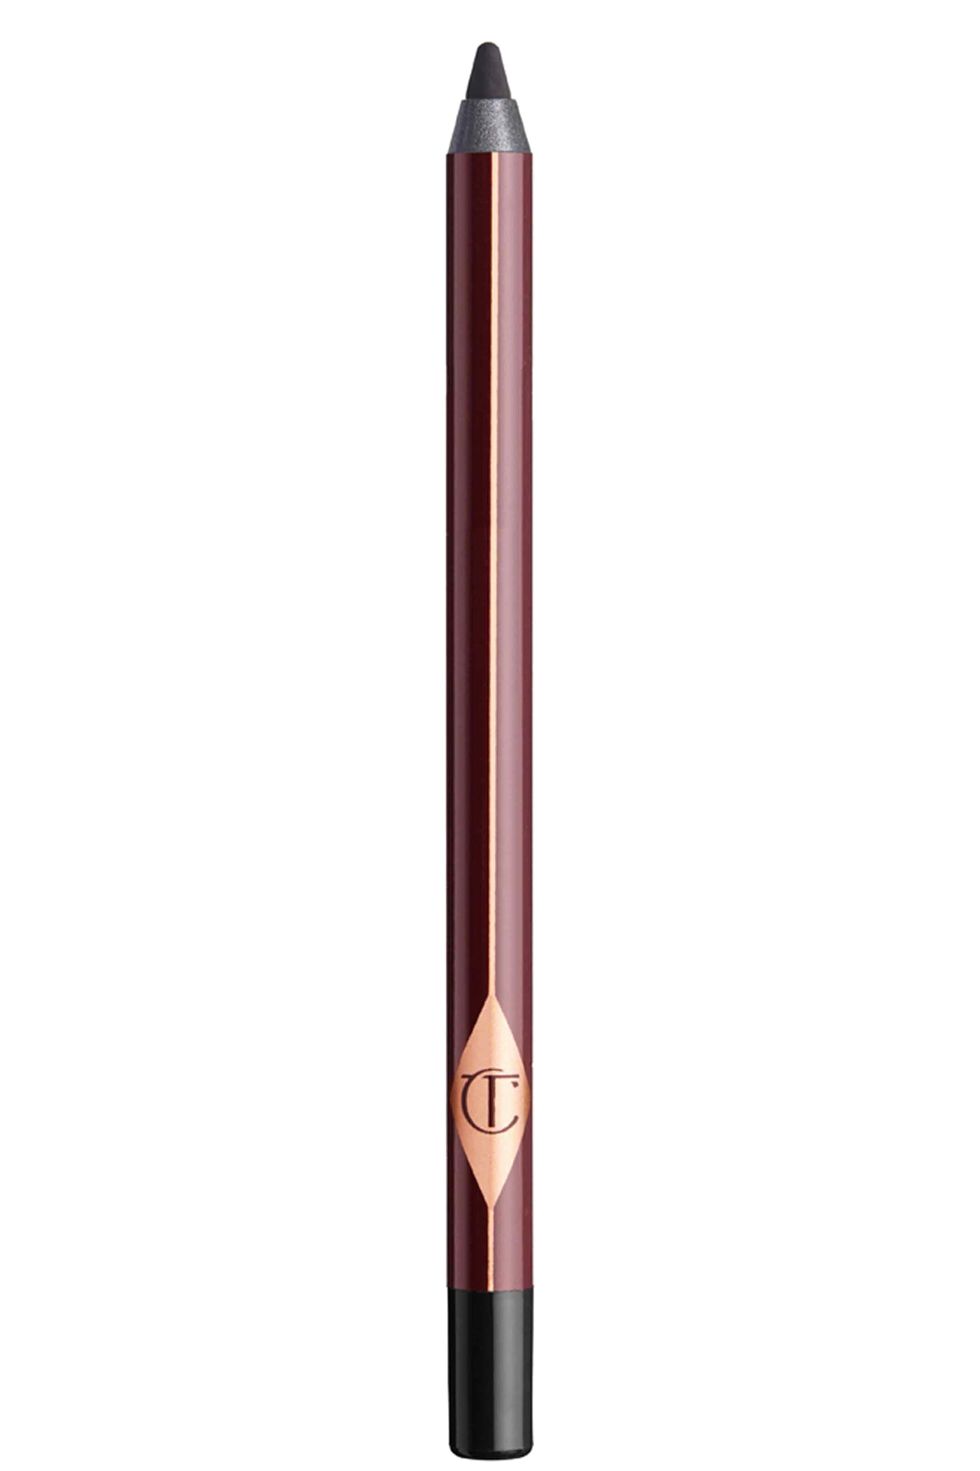 Rock ’n’ Kohl Eyeliner Pencil